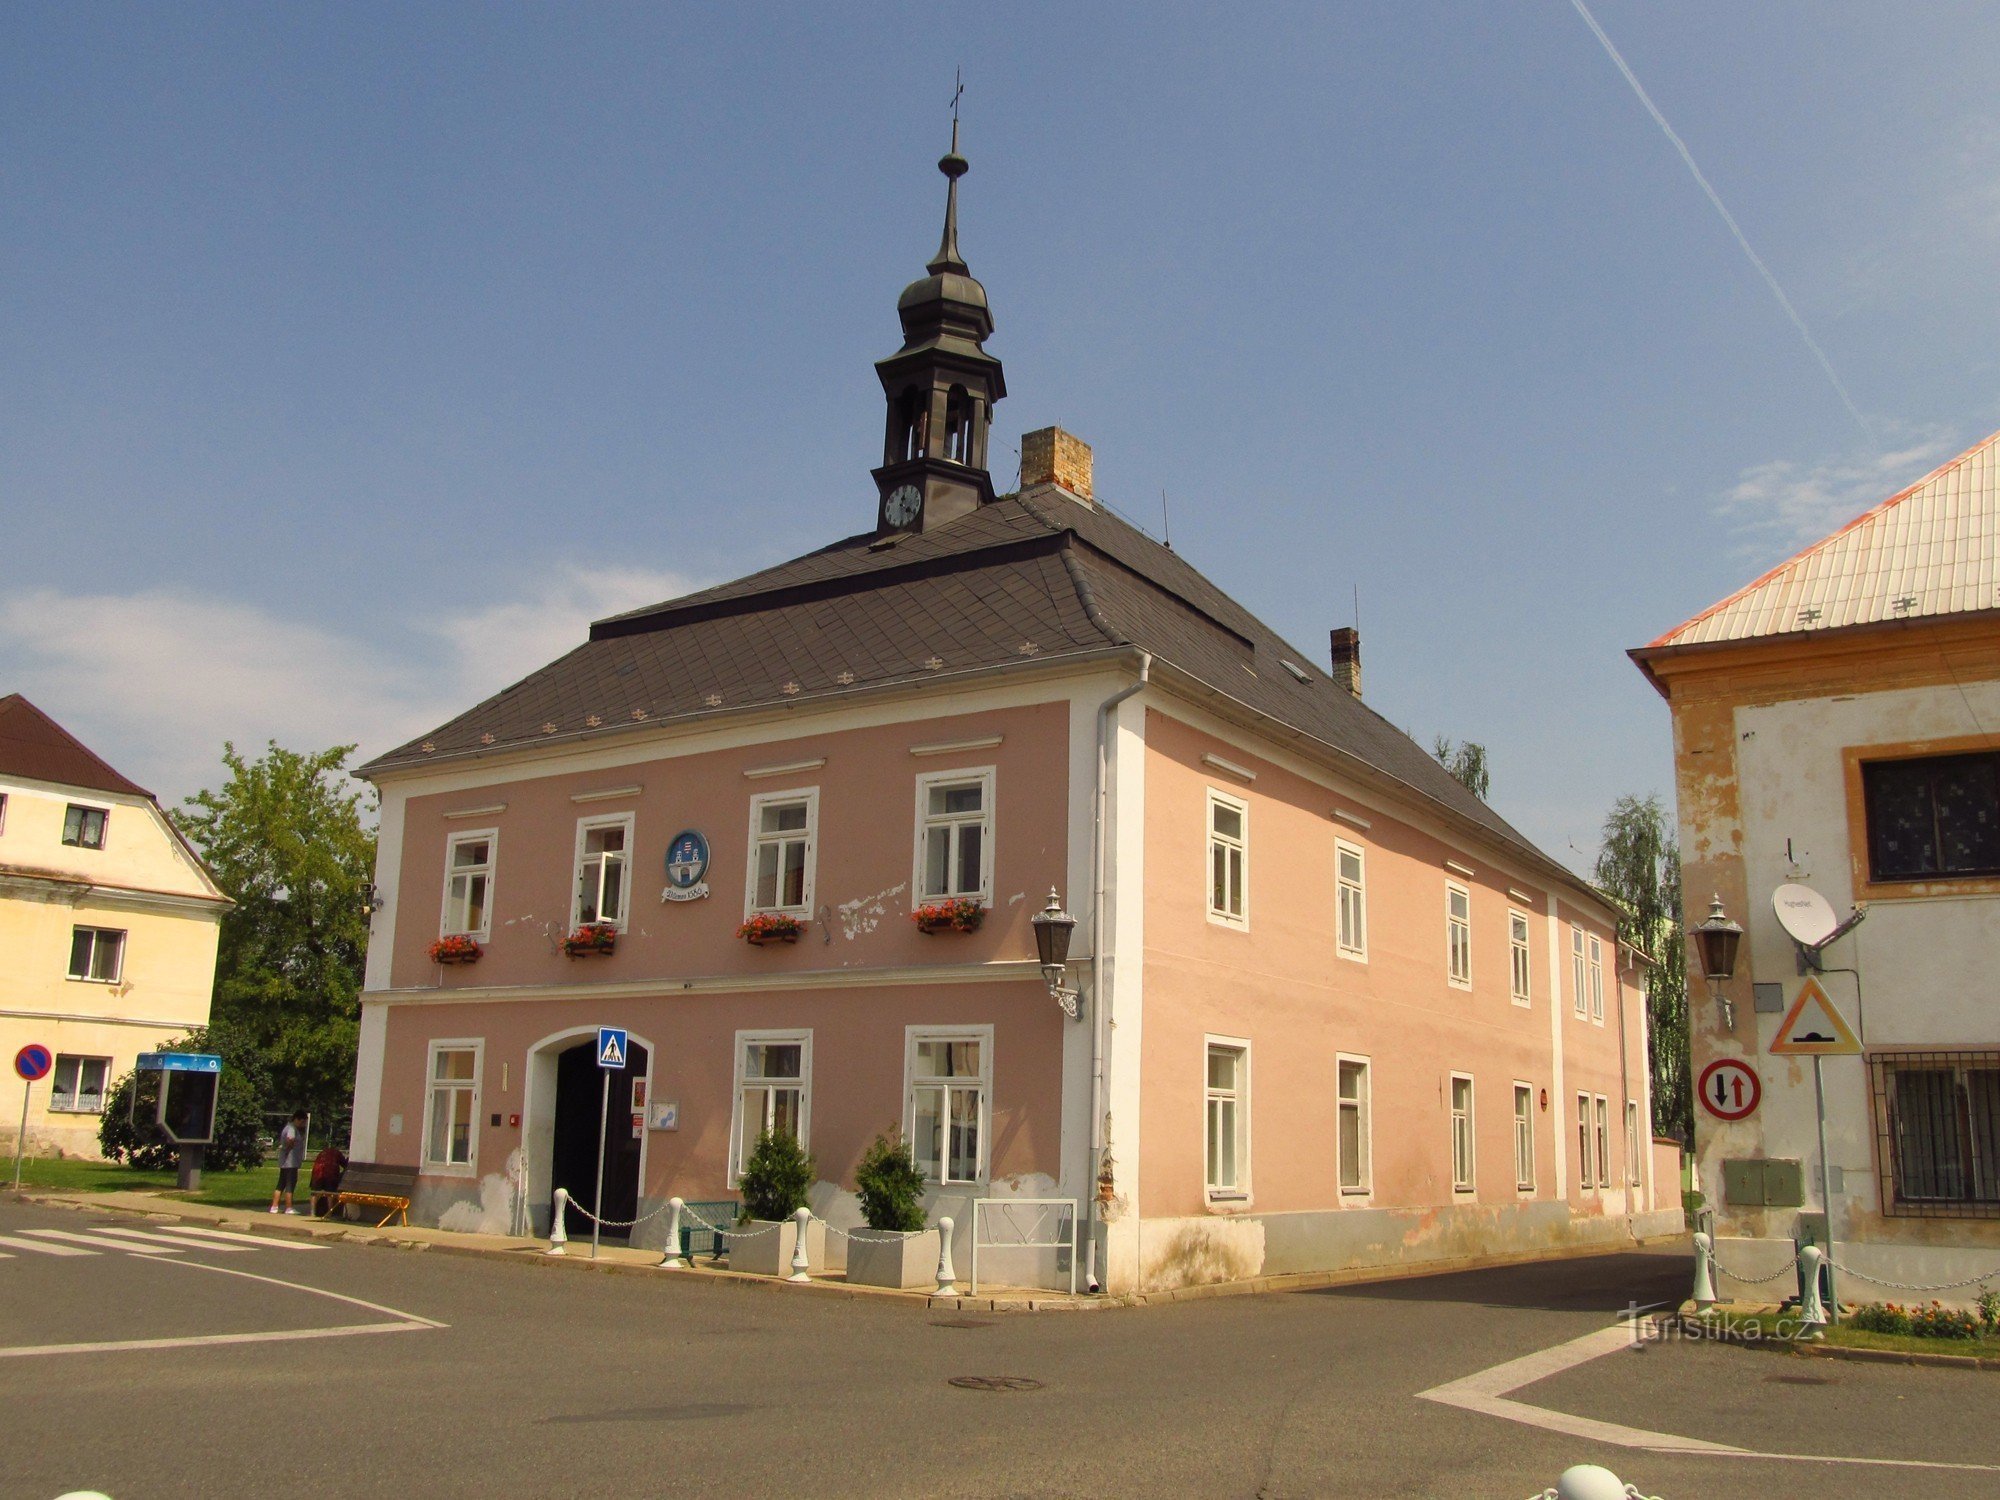 Vilémov rådhus från slutet av 18-talet med torn och vapensköld på fasaden